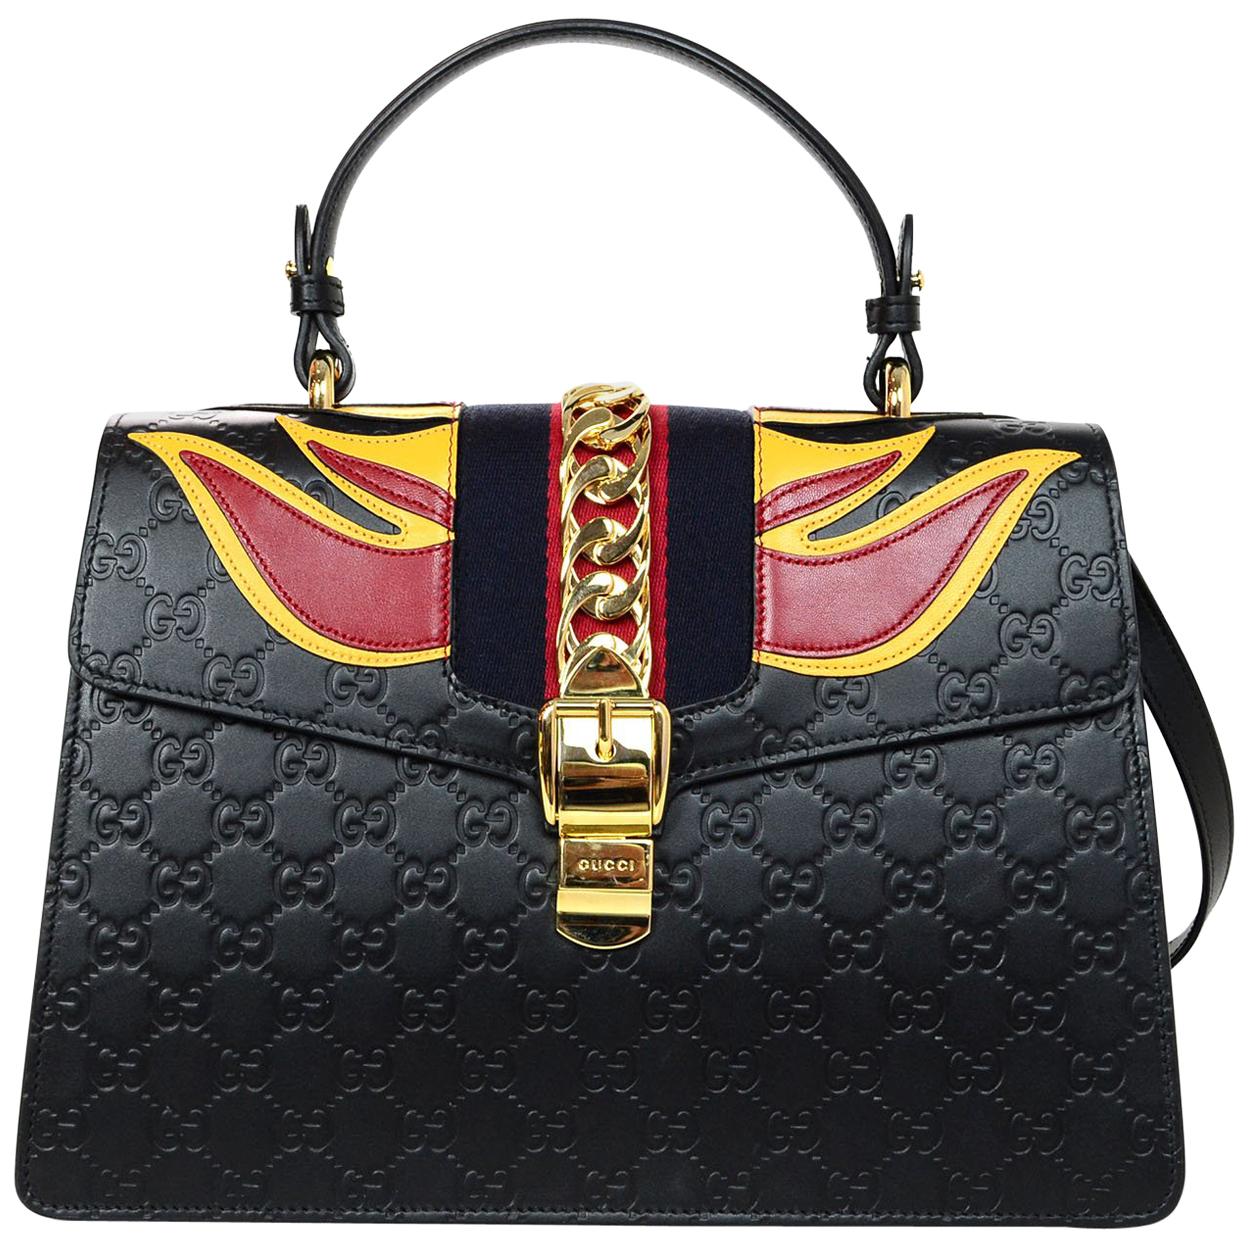 Gucci Black Leather Monogram Guccissima Medium Sylvie Flame Bag 